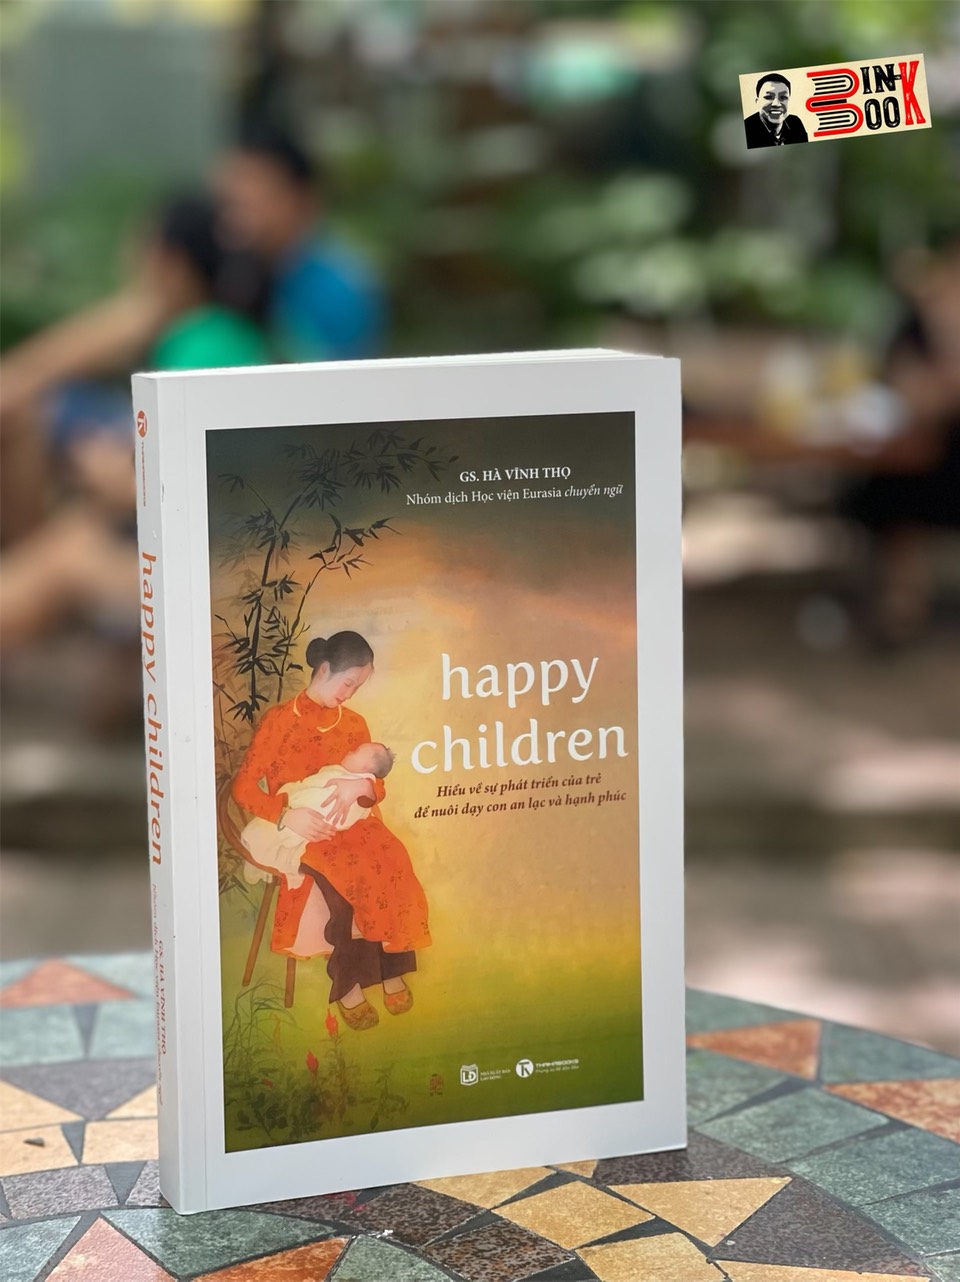 HAPPY CHILDREN -Hiểu về sự phát triển của trẻ để nuôi dạy con an lạc và hạnh phúc - Hà Vĩnh Thọ - Thái Hà  - NXB Lao Động